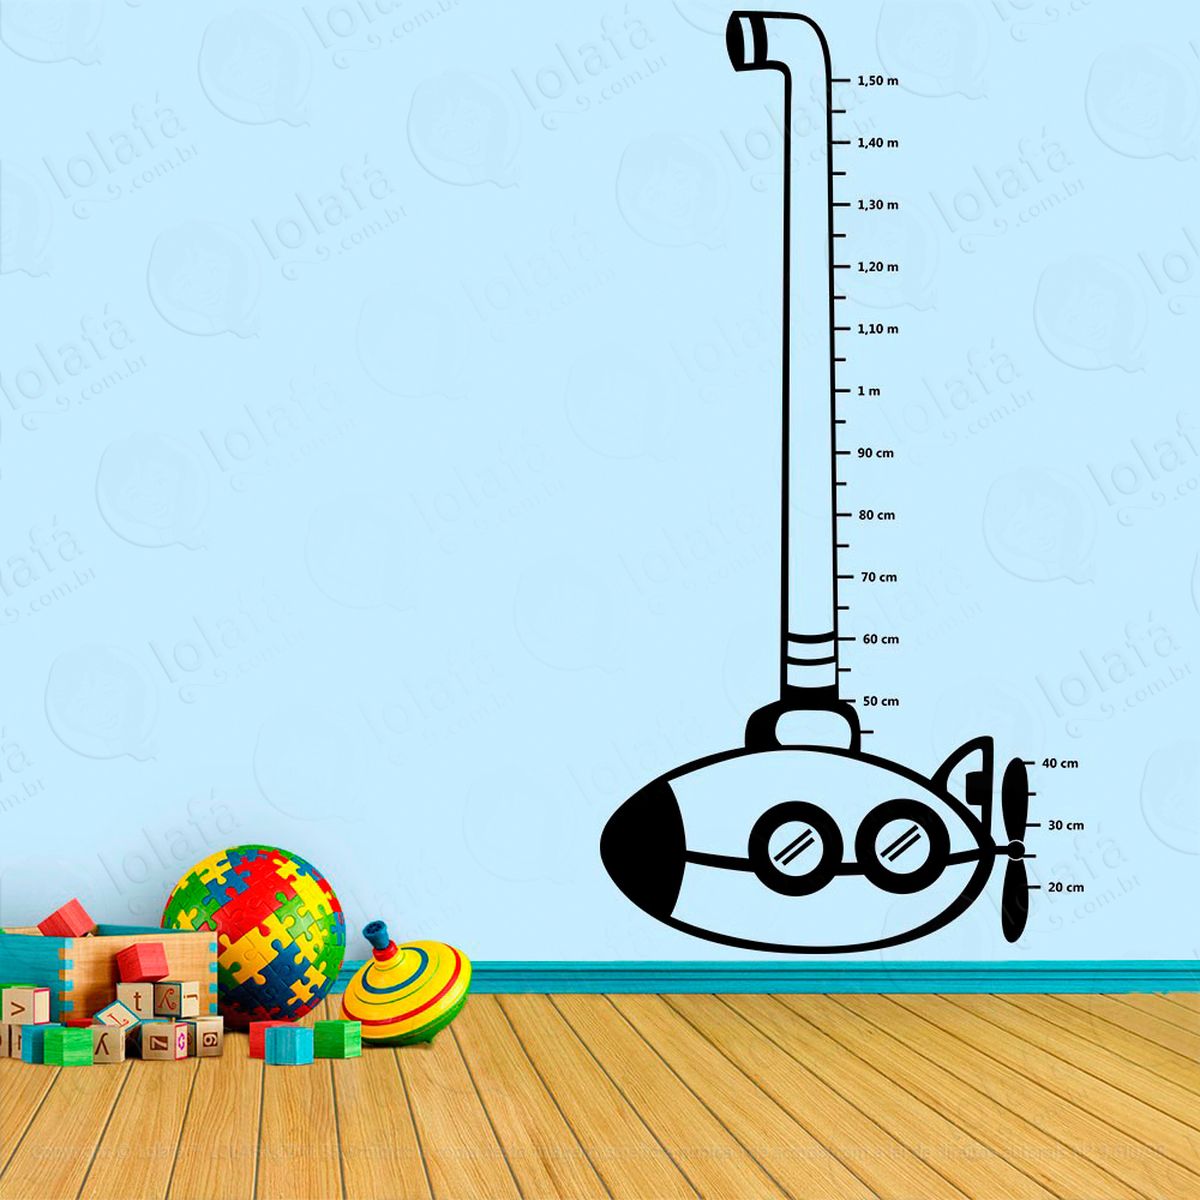 submarino adesivo régua de crescimento infantil, medidor de altura para quarto, porta e parede - mod:86